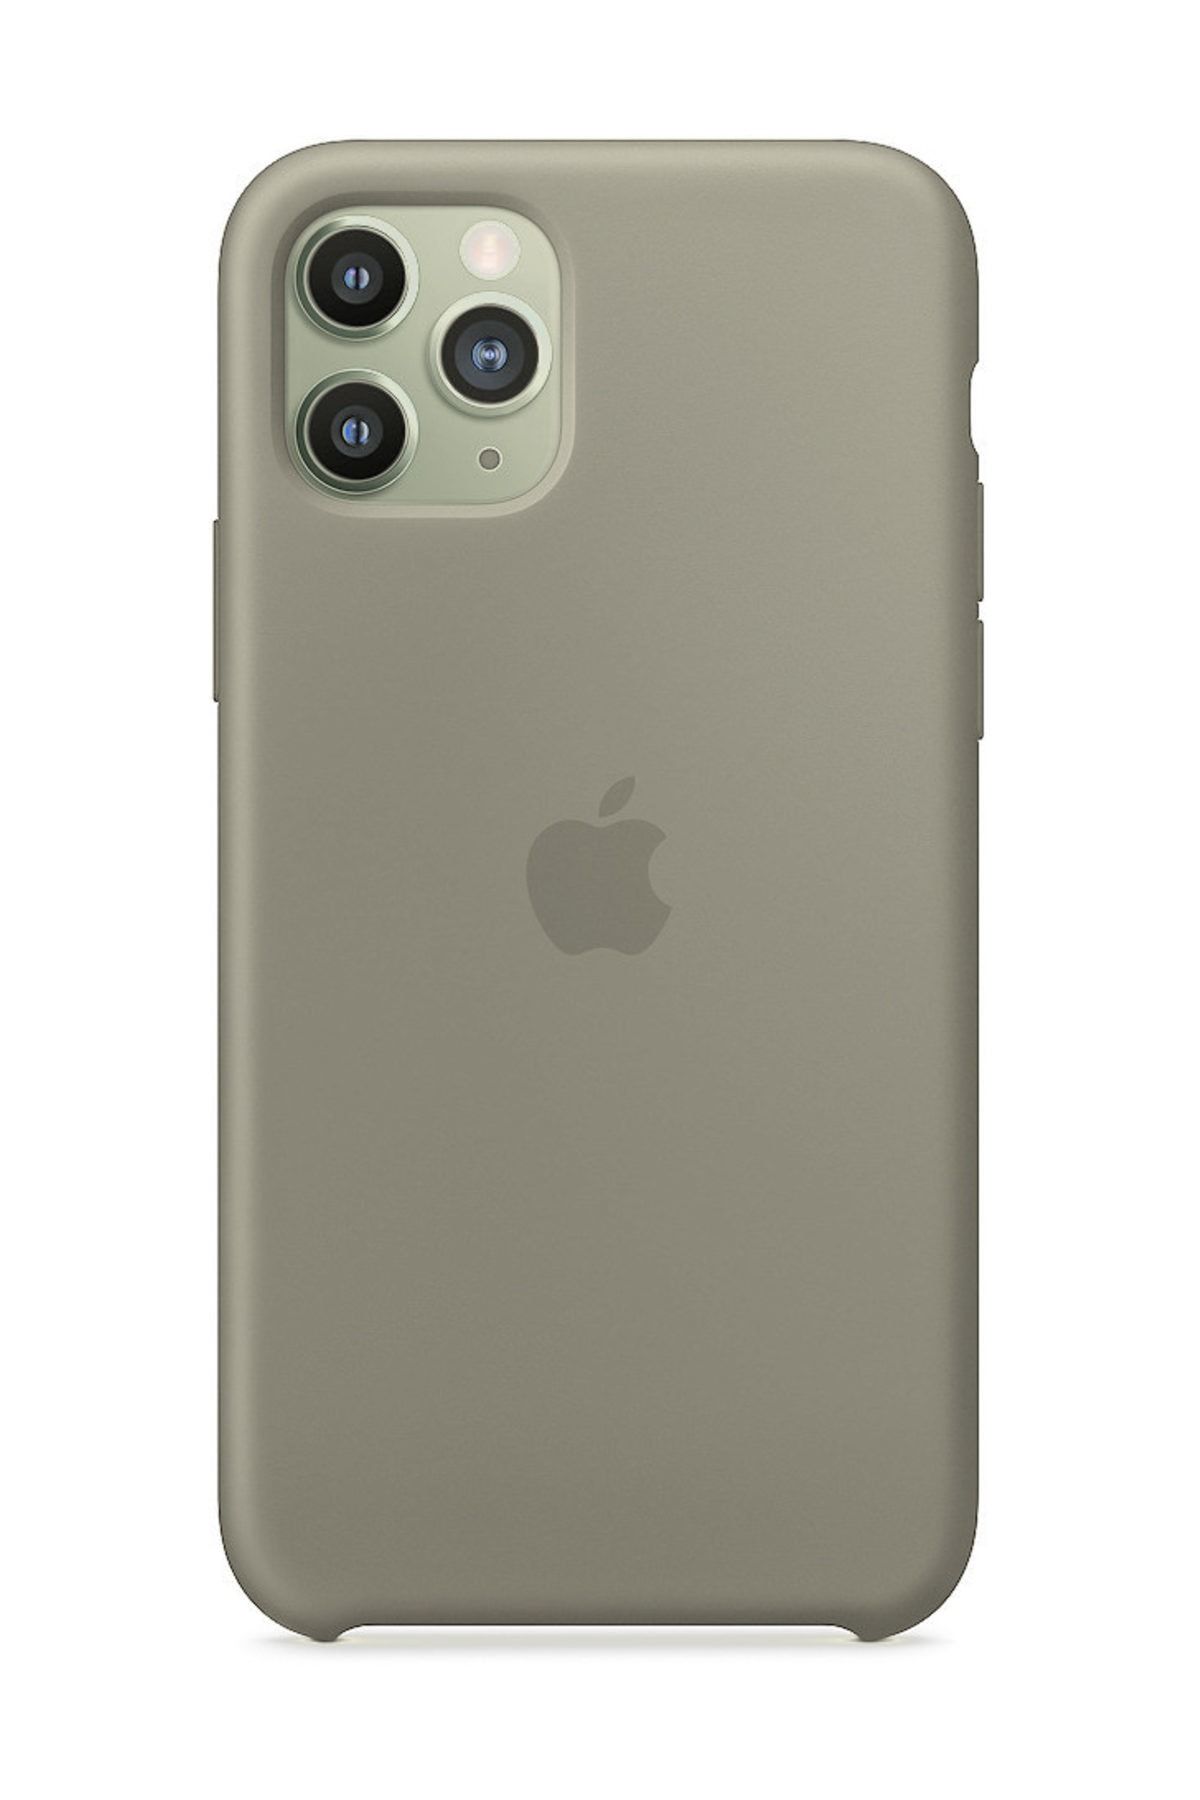 Telefon Aksesuarları iPhone 11 Pro Silikon Kılıf-MWVU2ZM/A - İthalatçı Garantili - Açık Gri